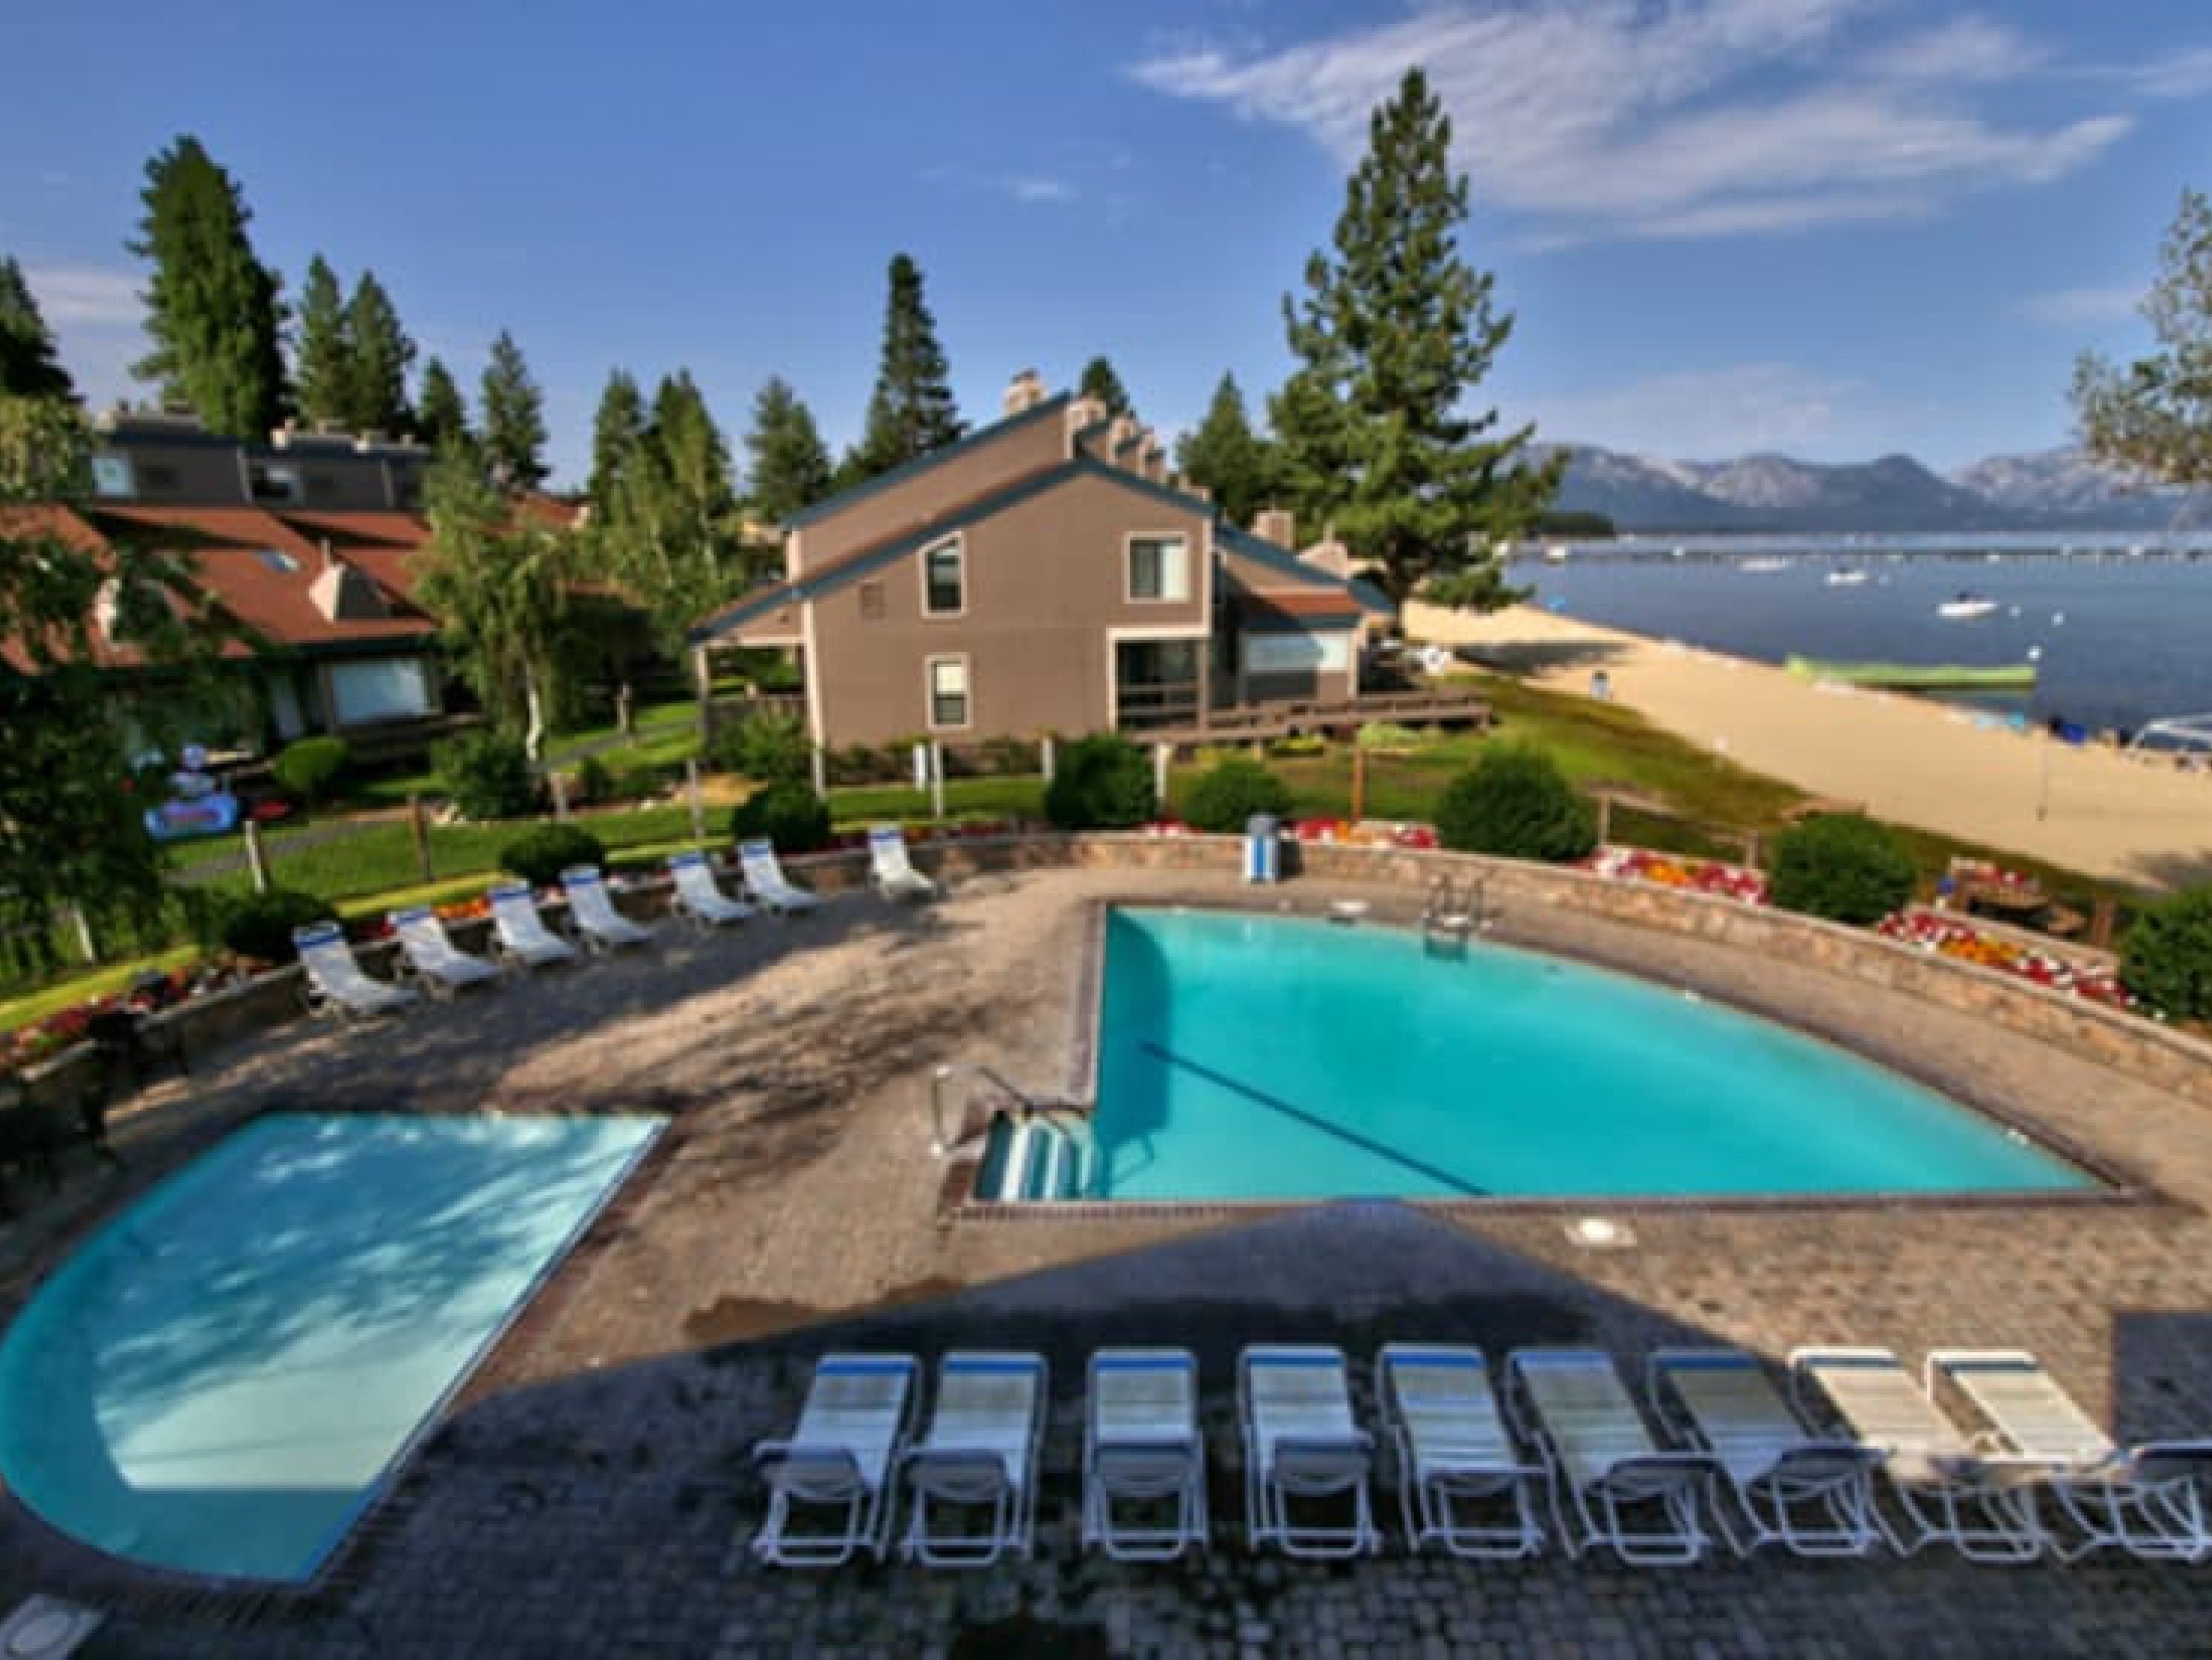 Lake Tahoe 63 Lake Tahoe vacation rentals with lake views